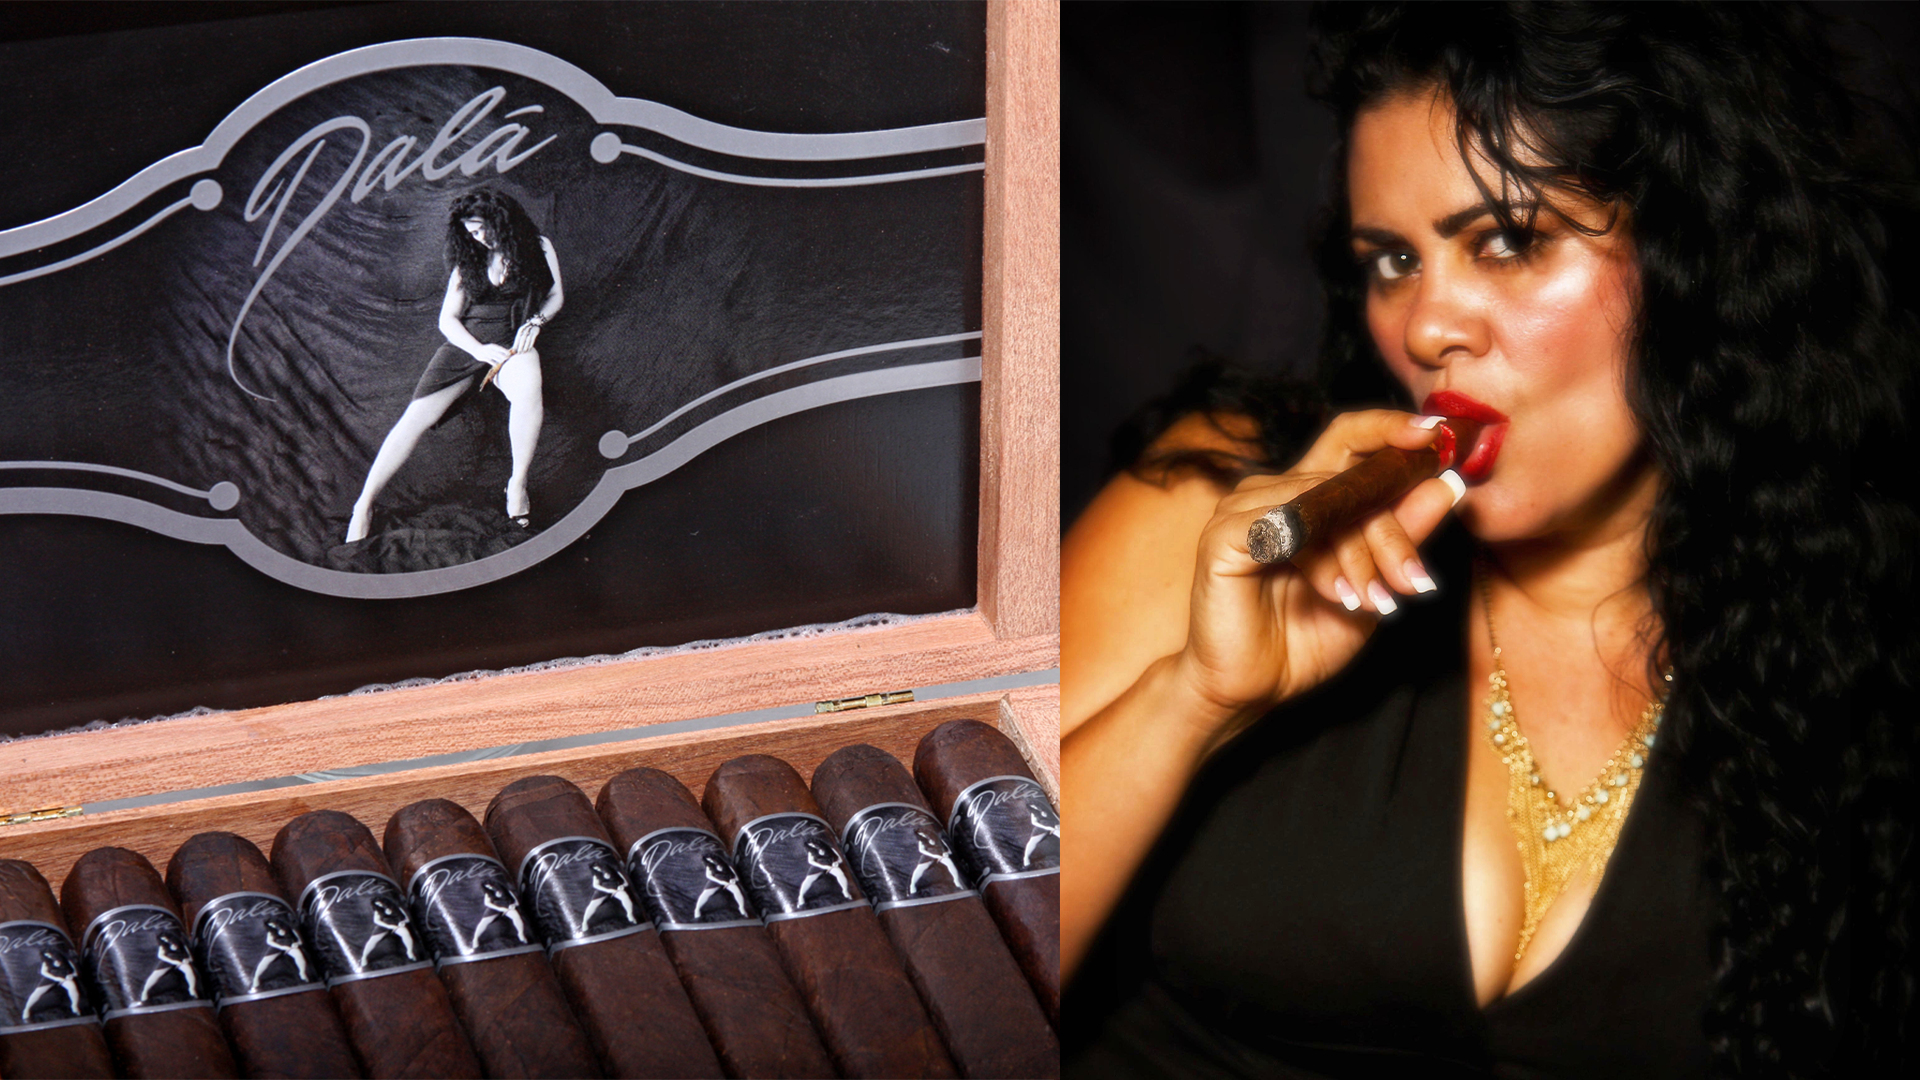 Odelma smoking Dala cigars